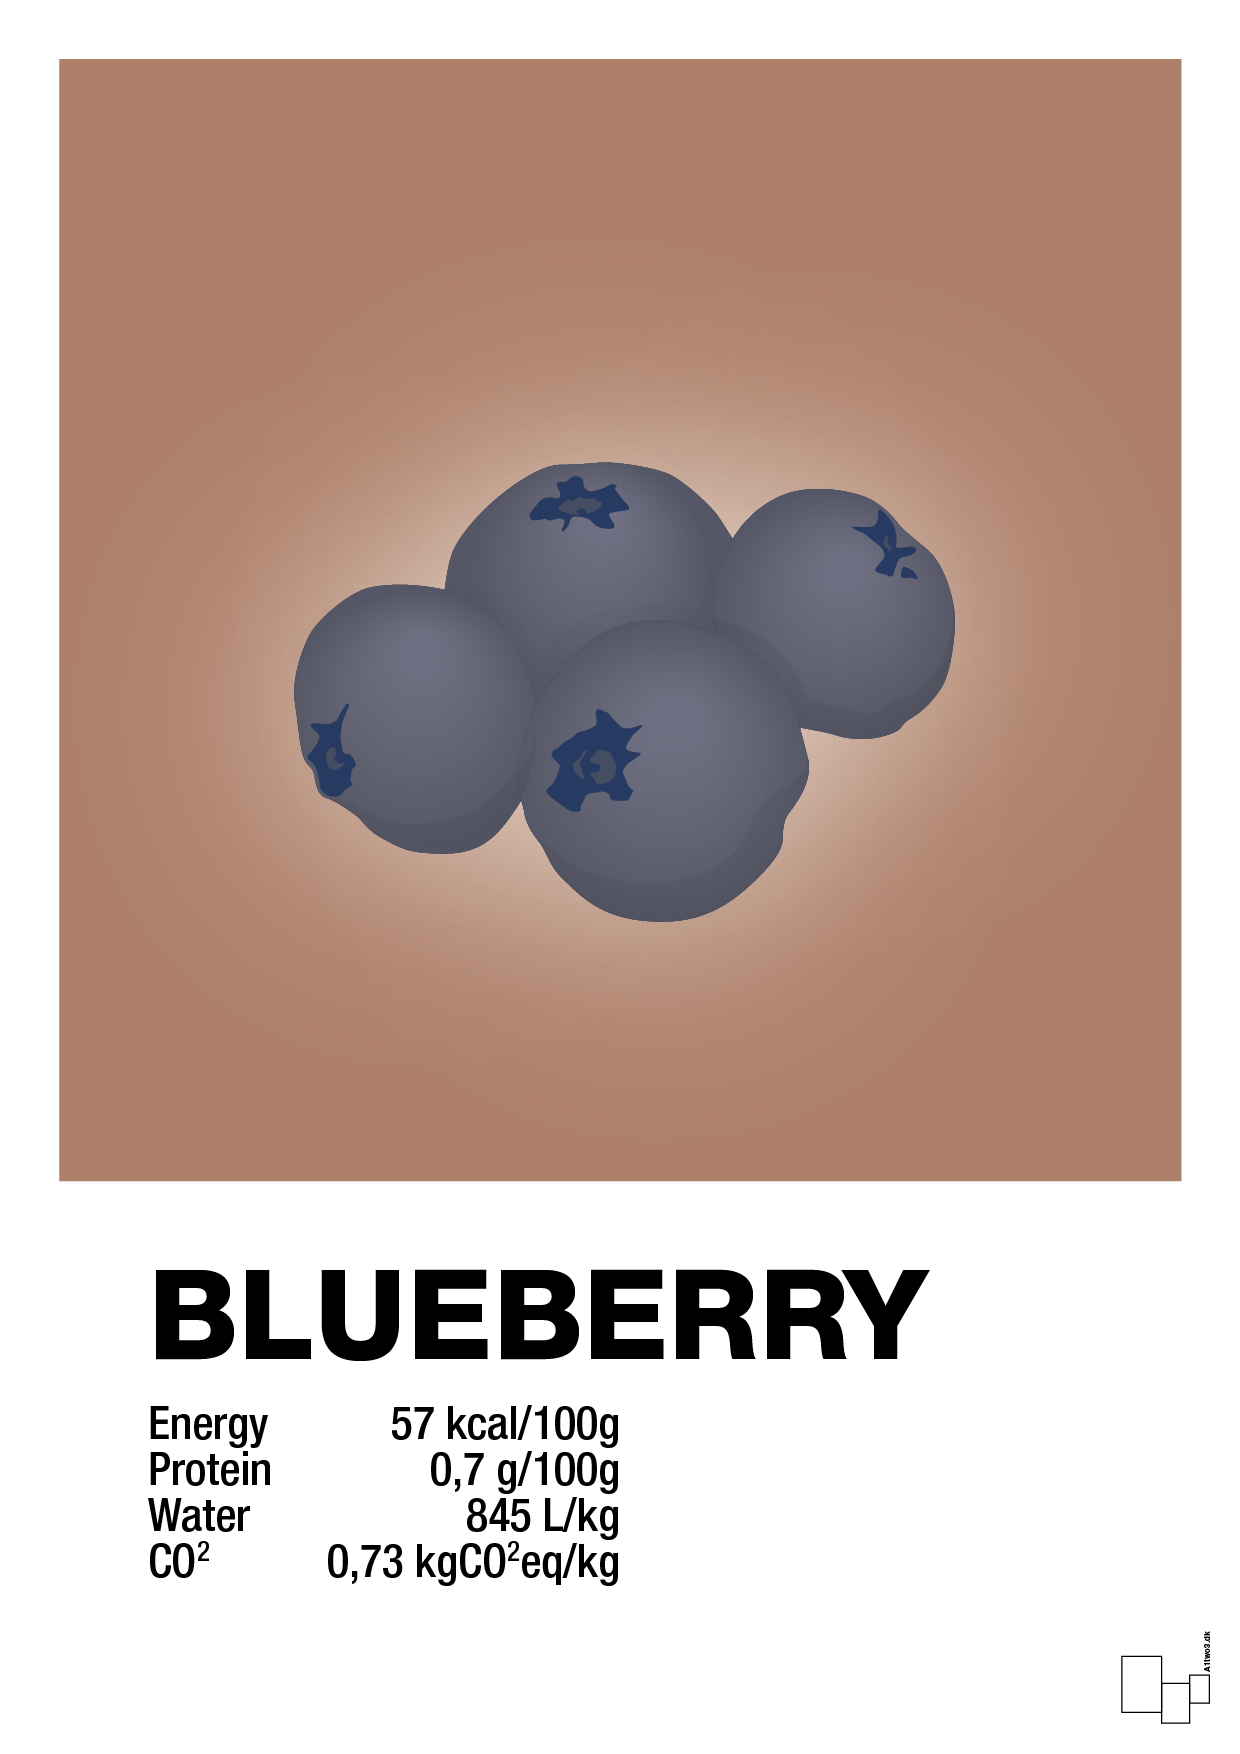 blueberry nutrition og miljø - Plakat med Mad & Drikke i Cider Spice